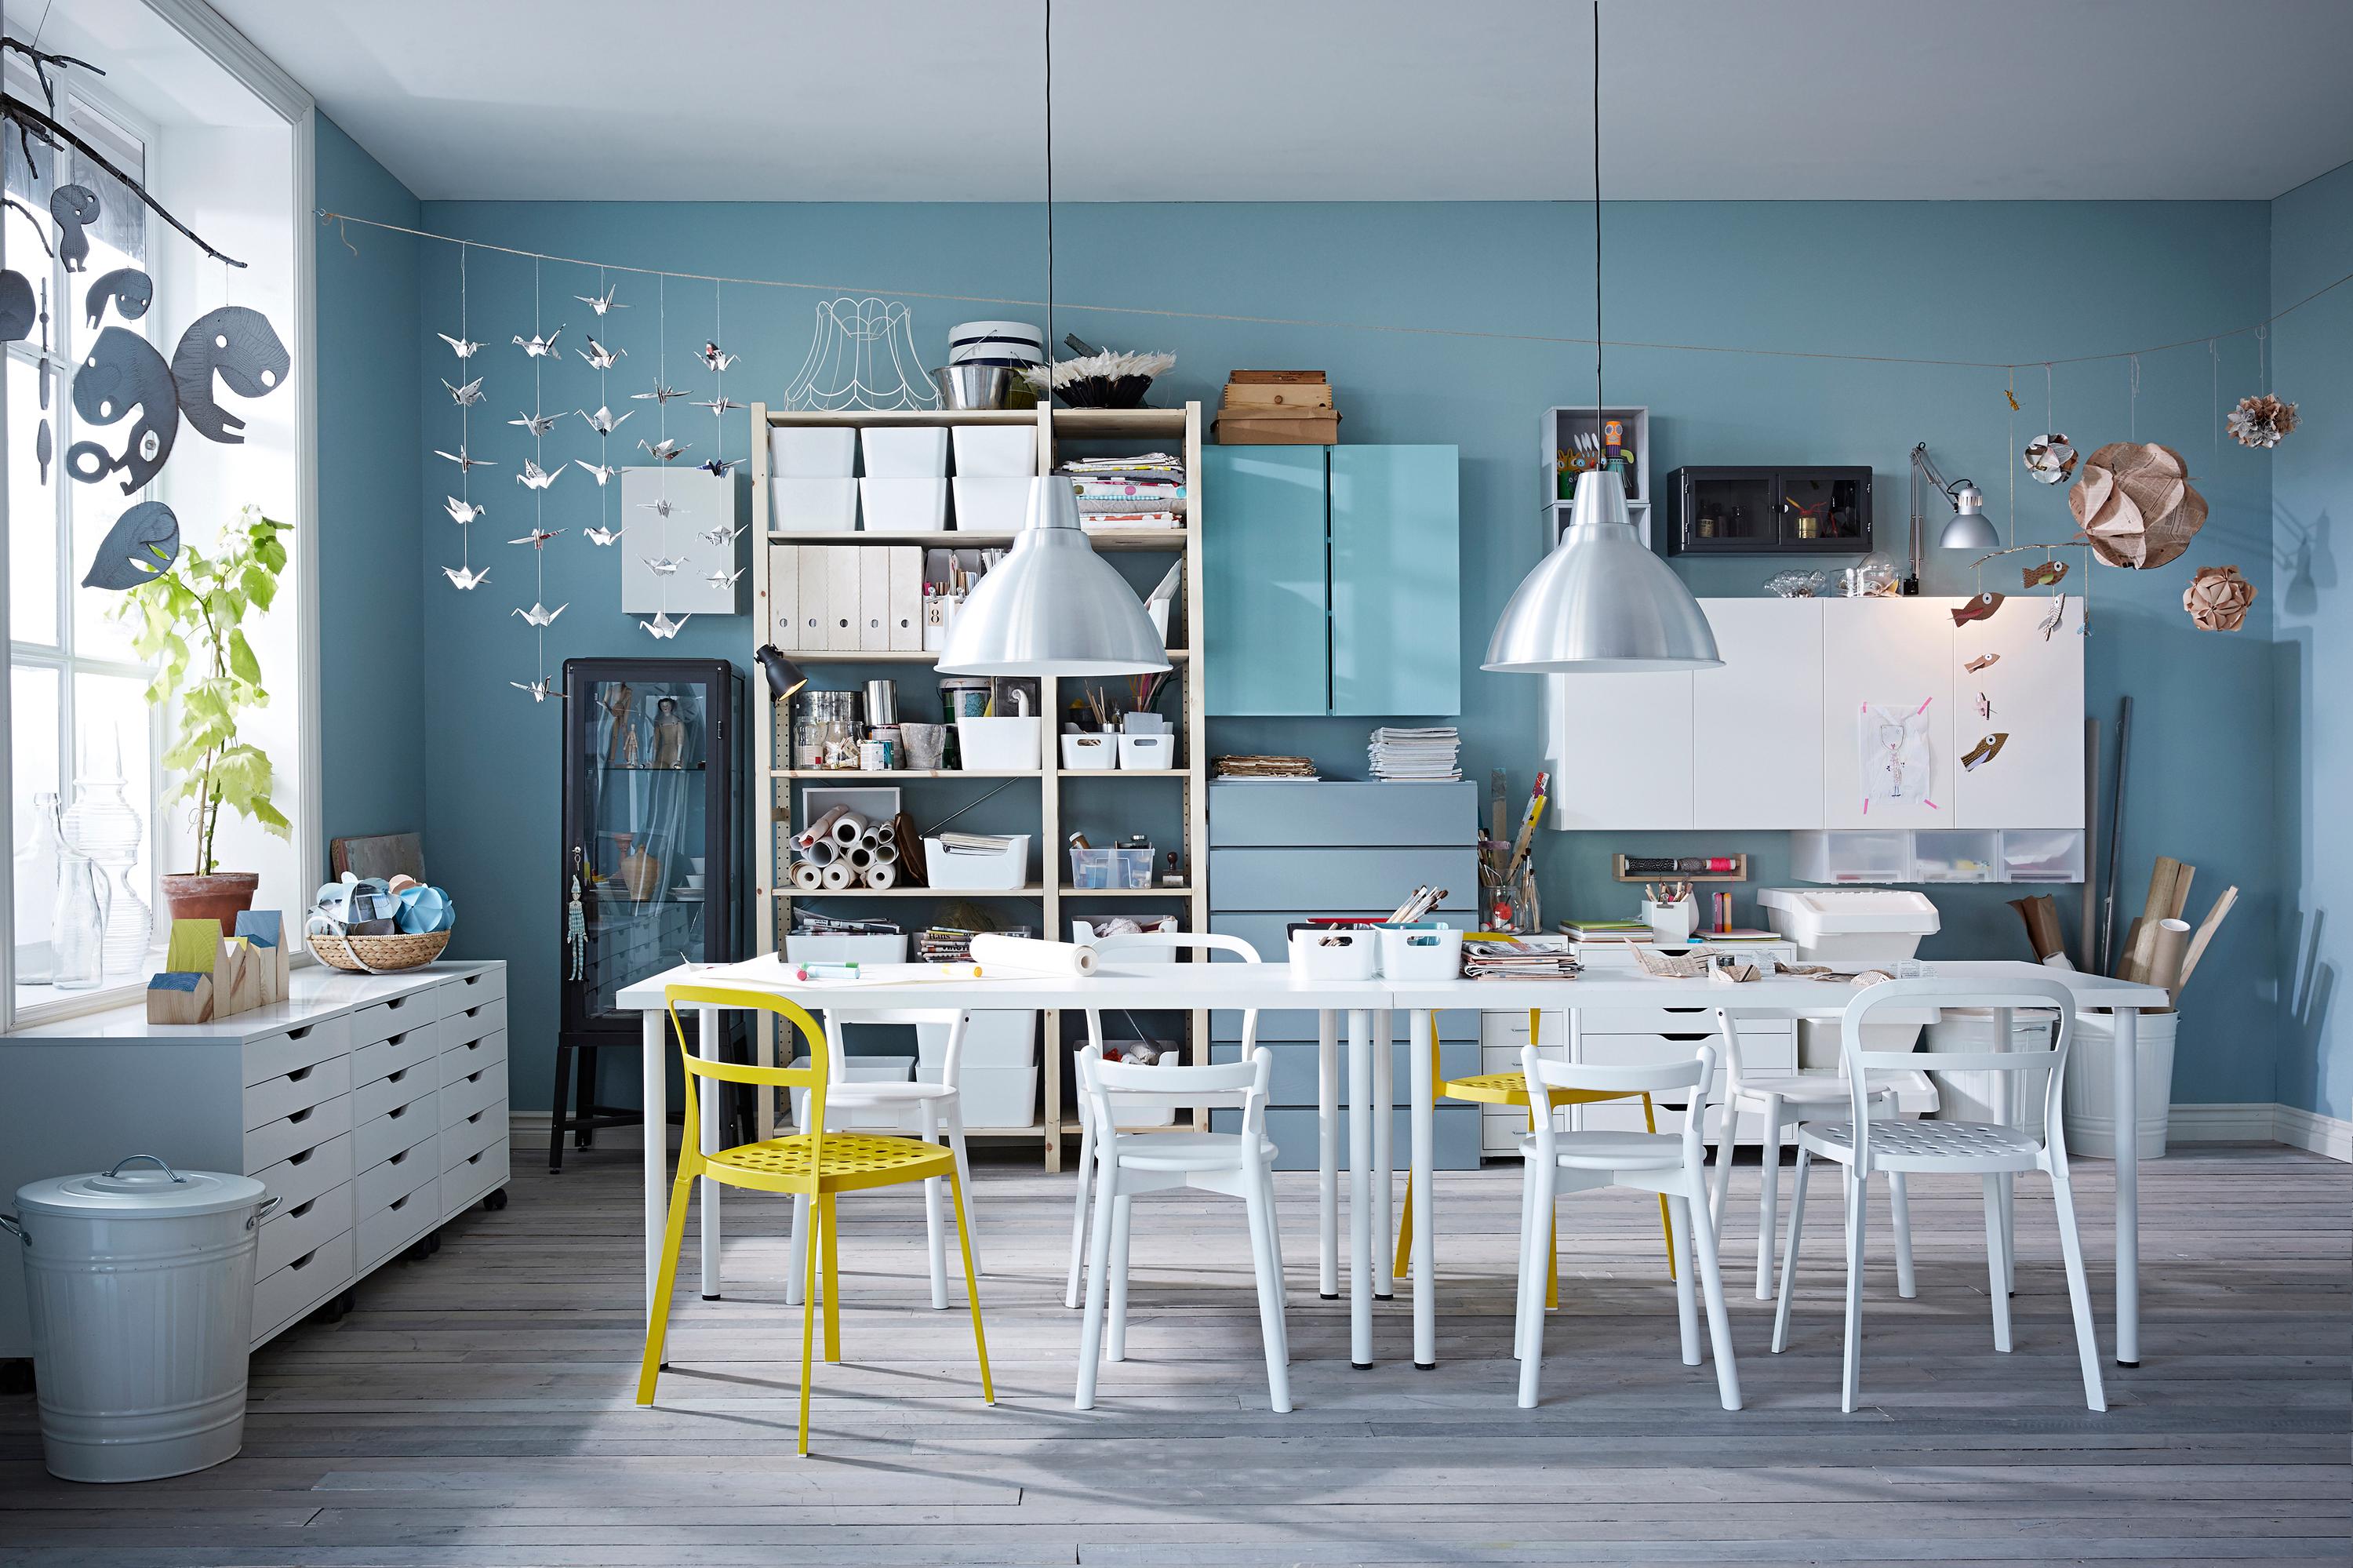 Bastelzimmer in Blautönen und Weiß #arbeitstisch #wandfarbe #regalsystem #kommode #ikea #bastelecke #tisch #blauewandgestaltung ©Inter IKEA Systems B.V.